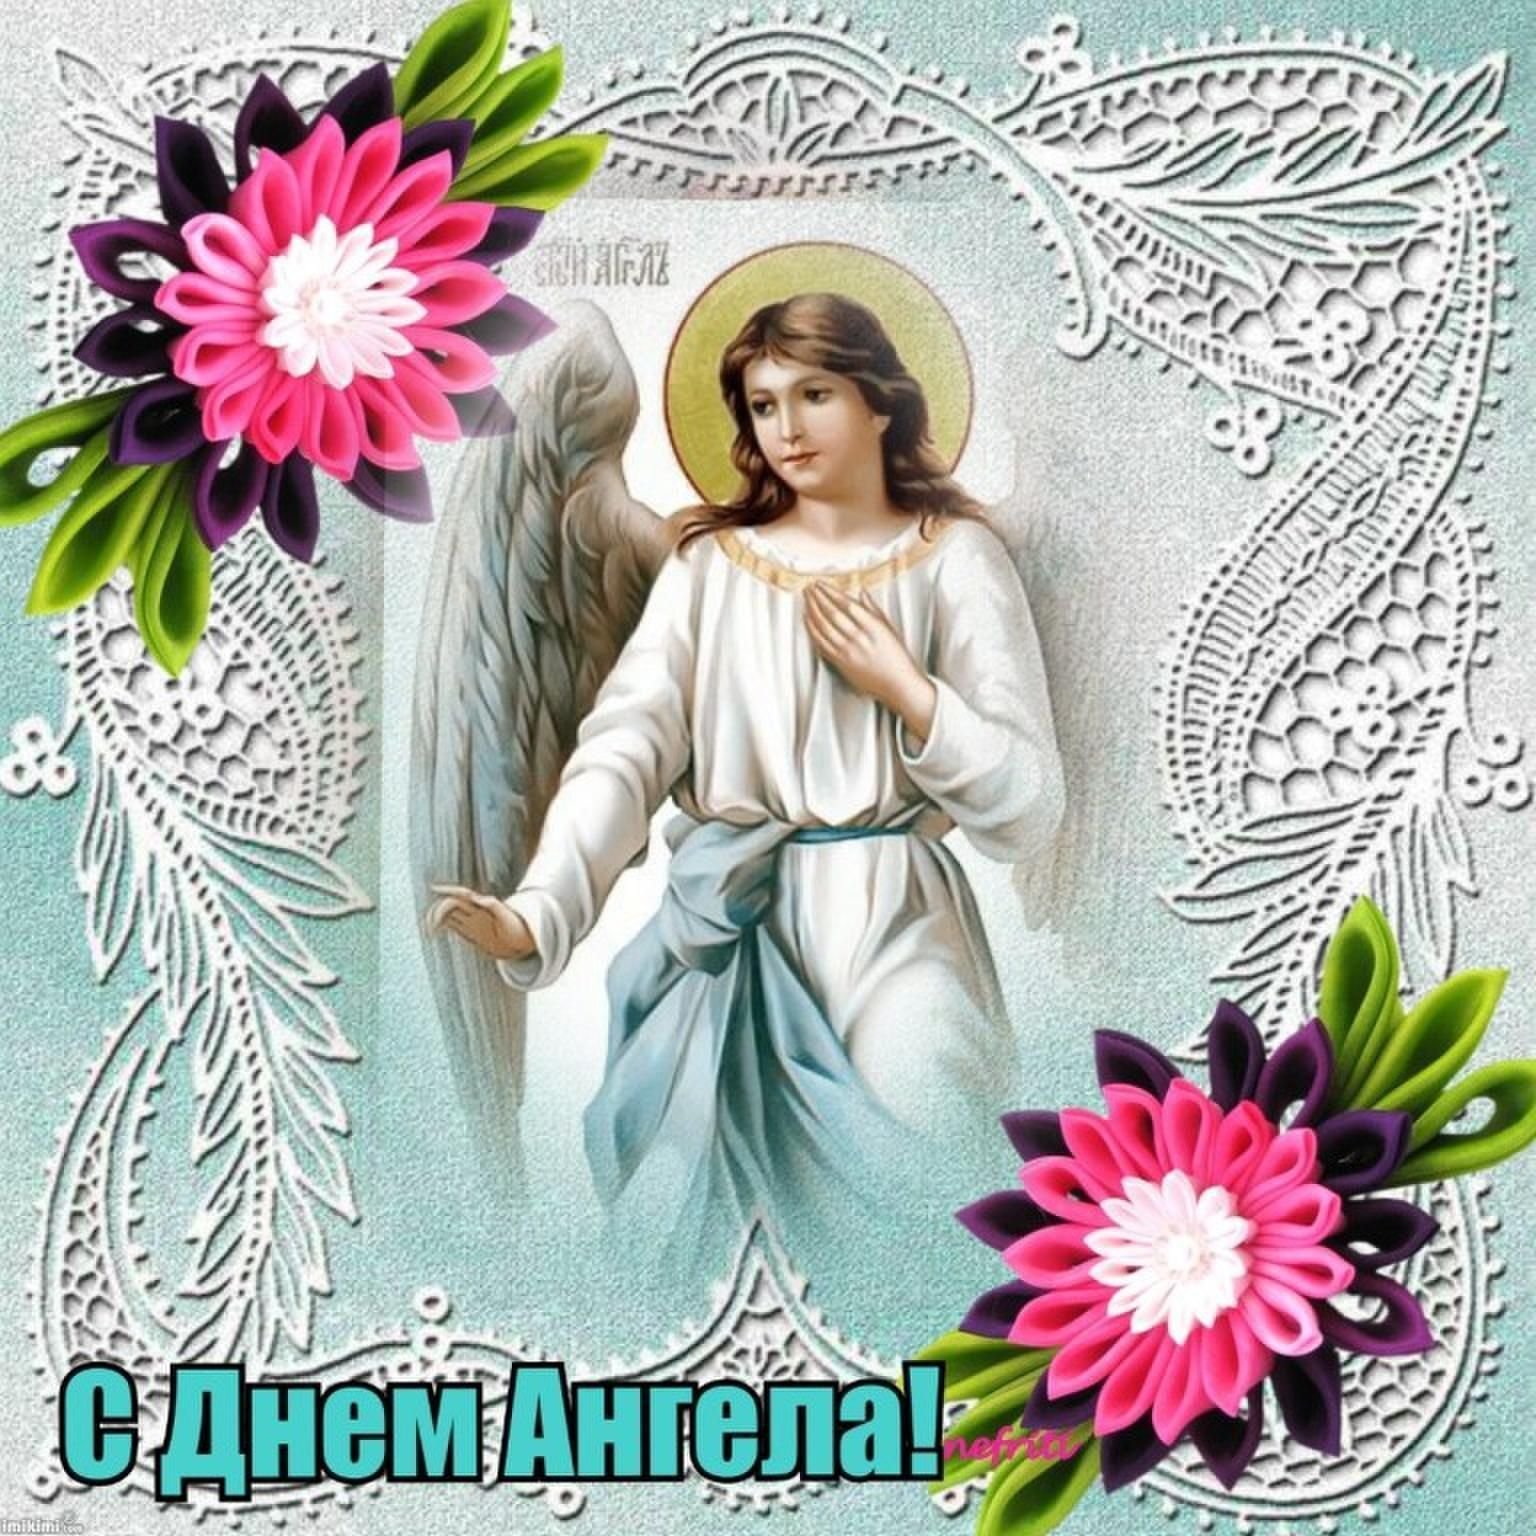 26 февраля именины женские. День ангела. Открытка "с днем ангела". С днём ангела открытка поздравление. Православные открытки с днем ангела.